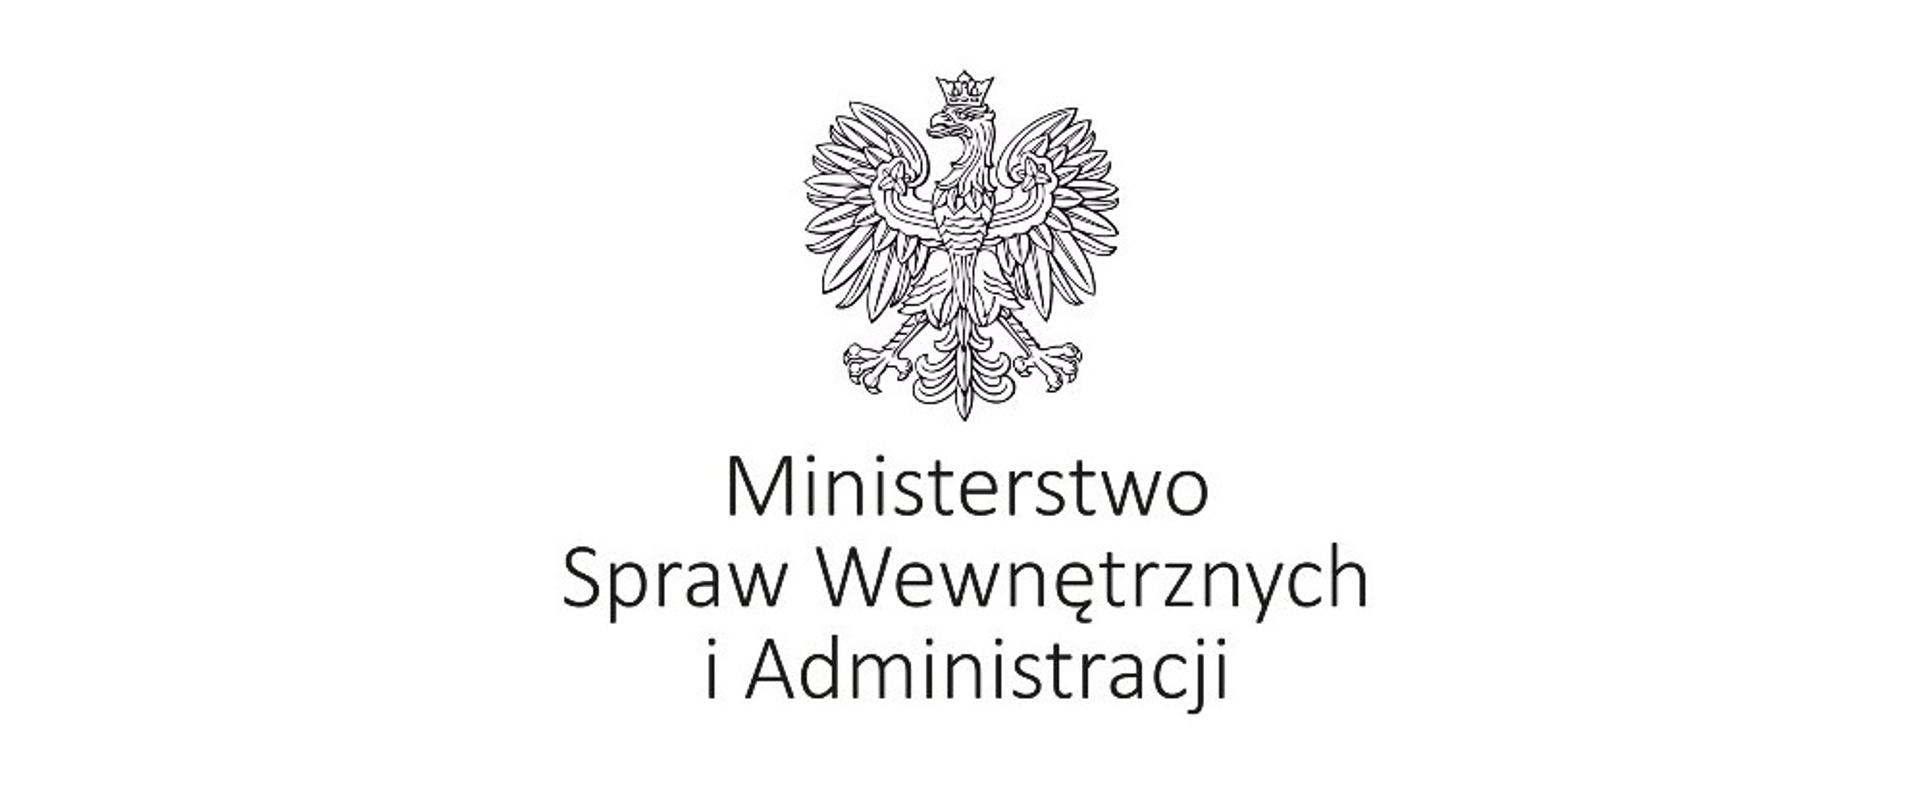 Zdjęcie przedstawia na białym tle na środku Godło Polski oraz napis czarnymi literami pod godłem Ministerstwo Spraw Wewnętrznych i Administracji.